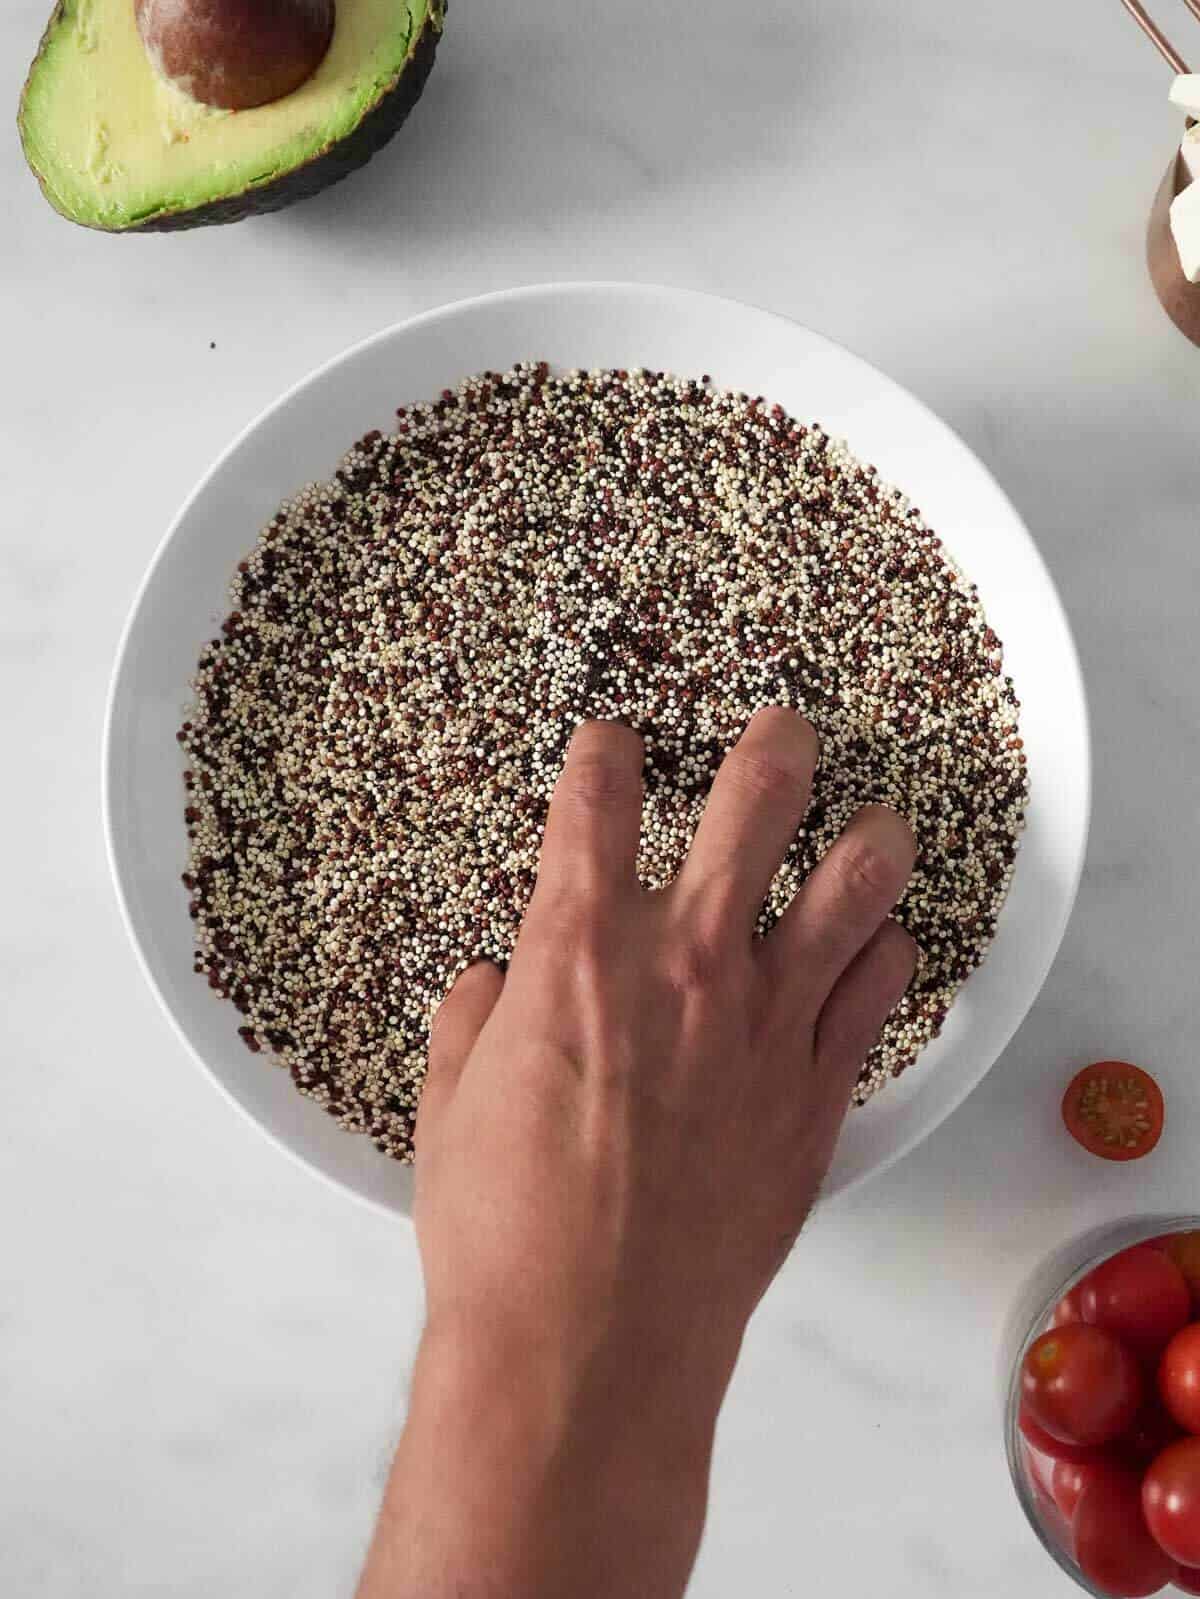 remojando quinoa y revolviendolo con la mano en un bowl blanco.